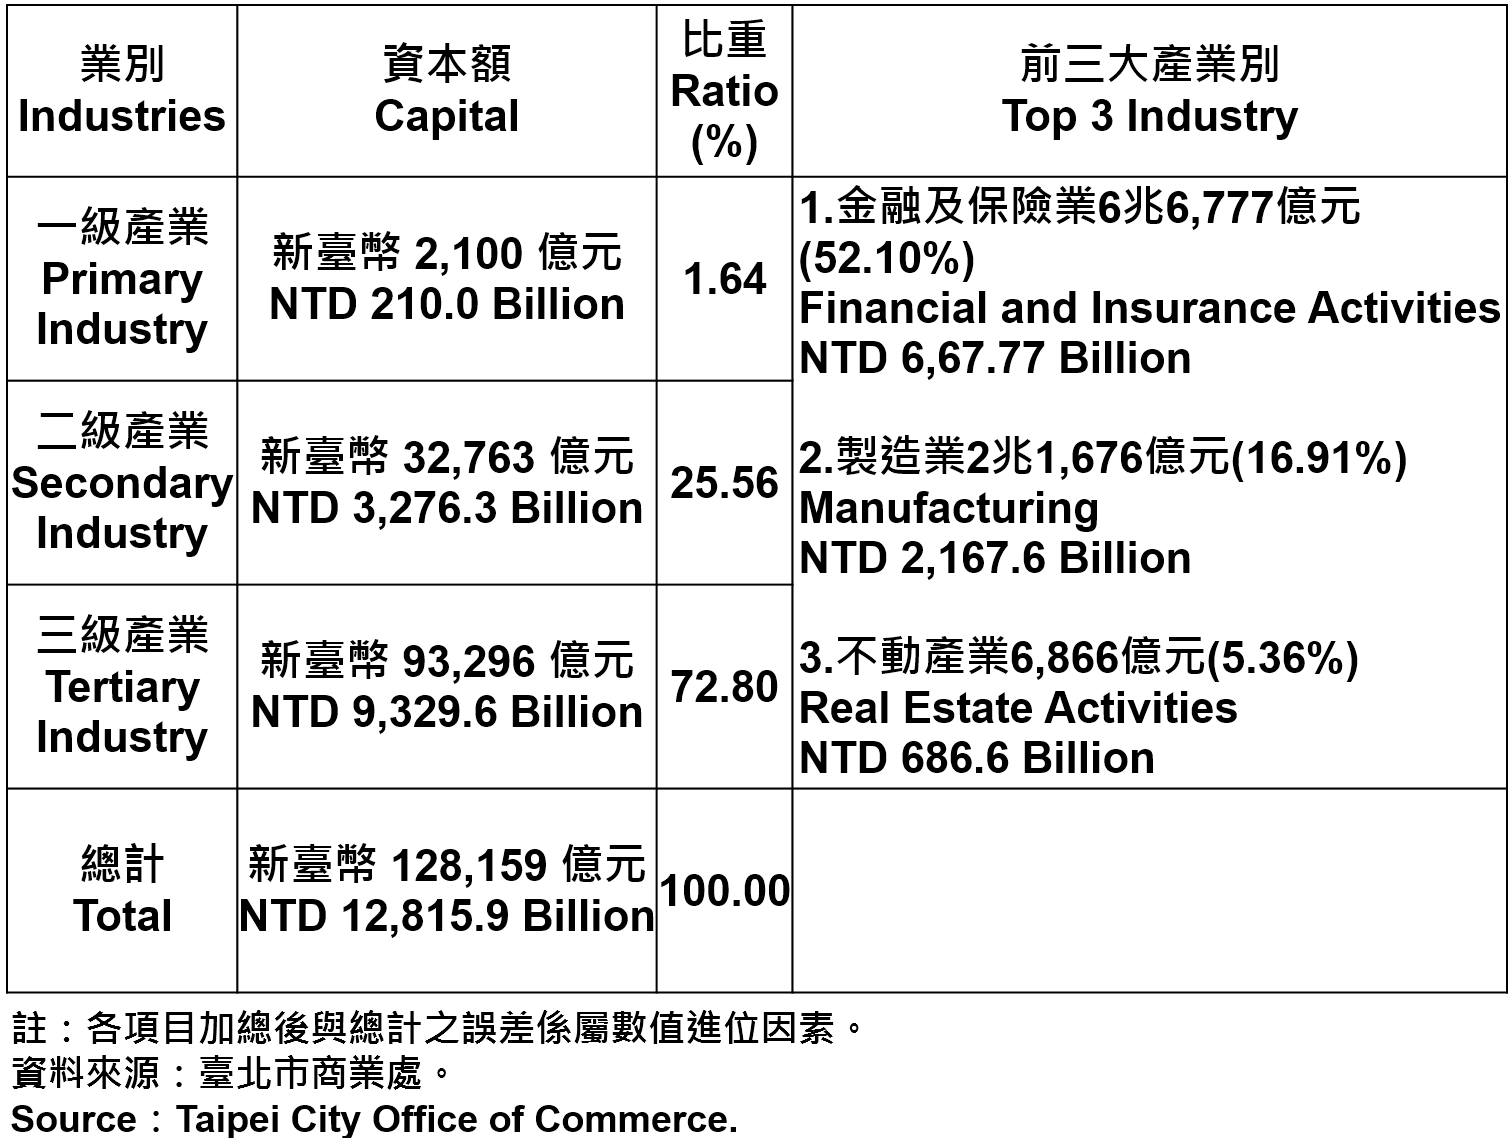 臺北市登記之公司資本總額—2019Q3 Total Capital of Companies and Firms Registered in Taipei City—2019Q3